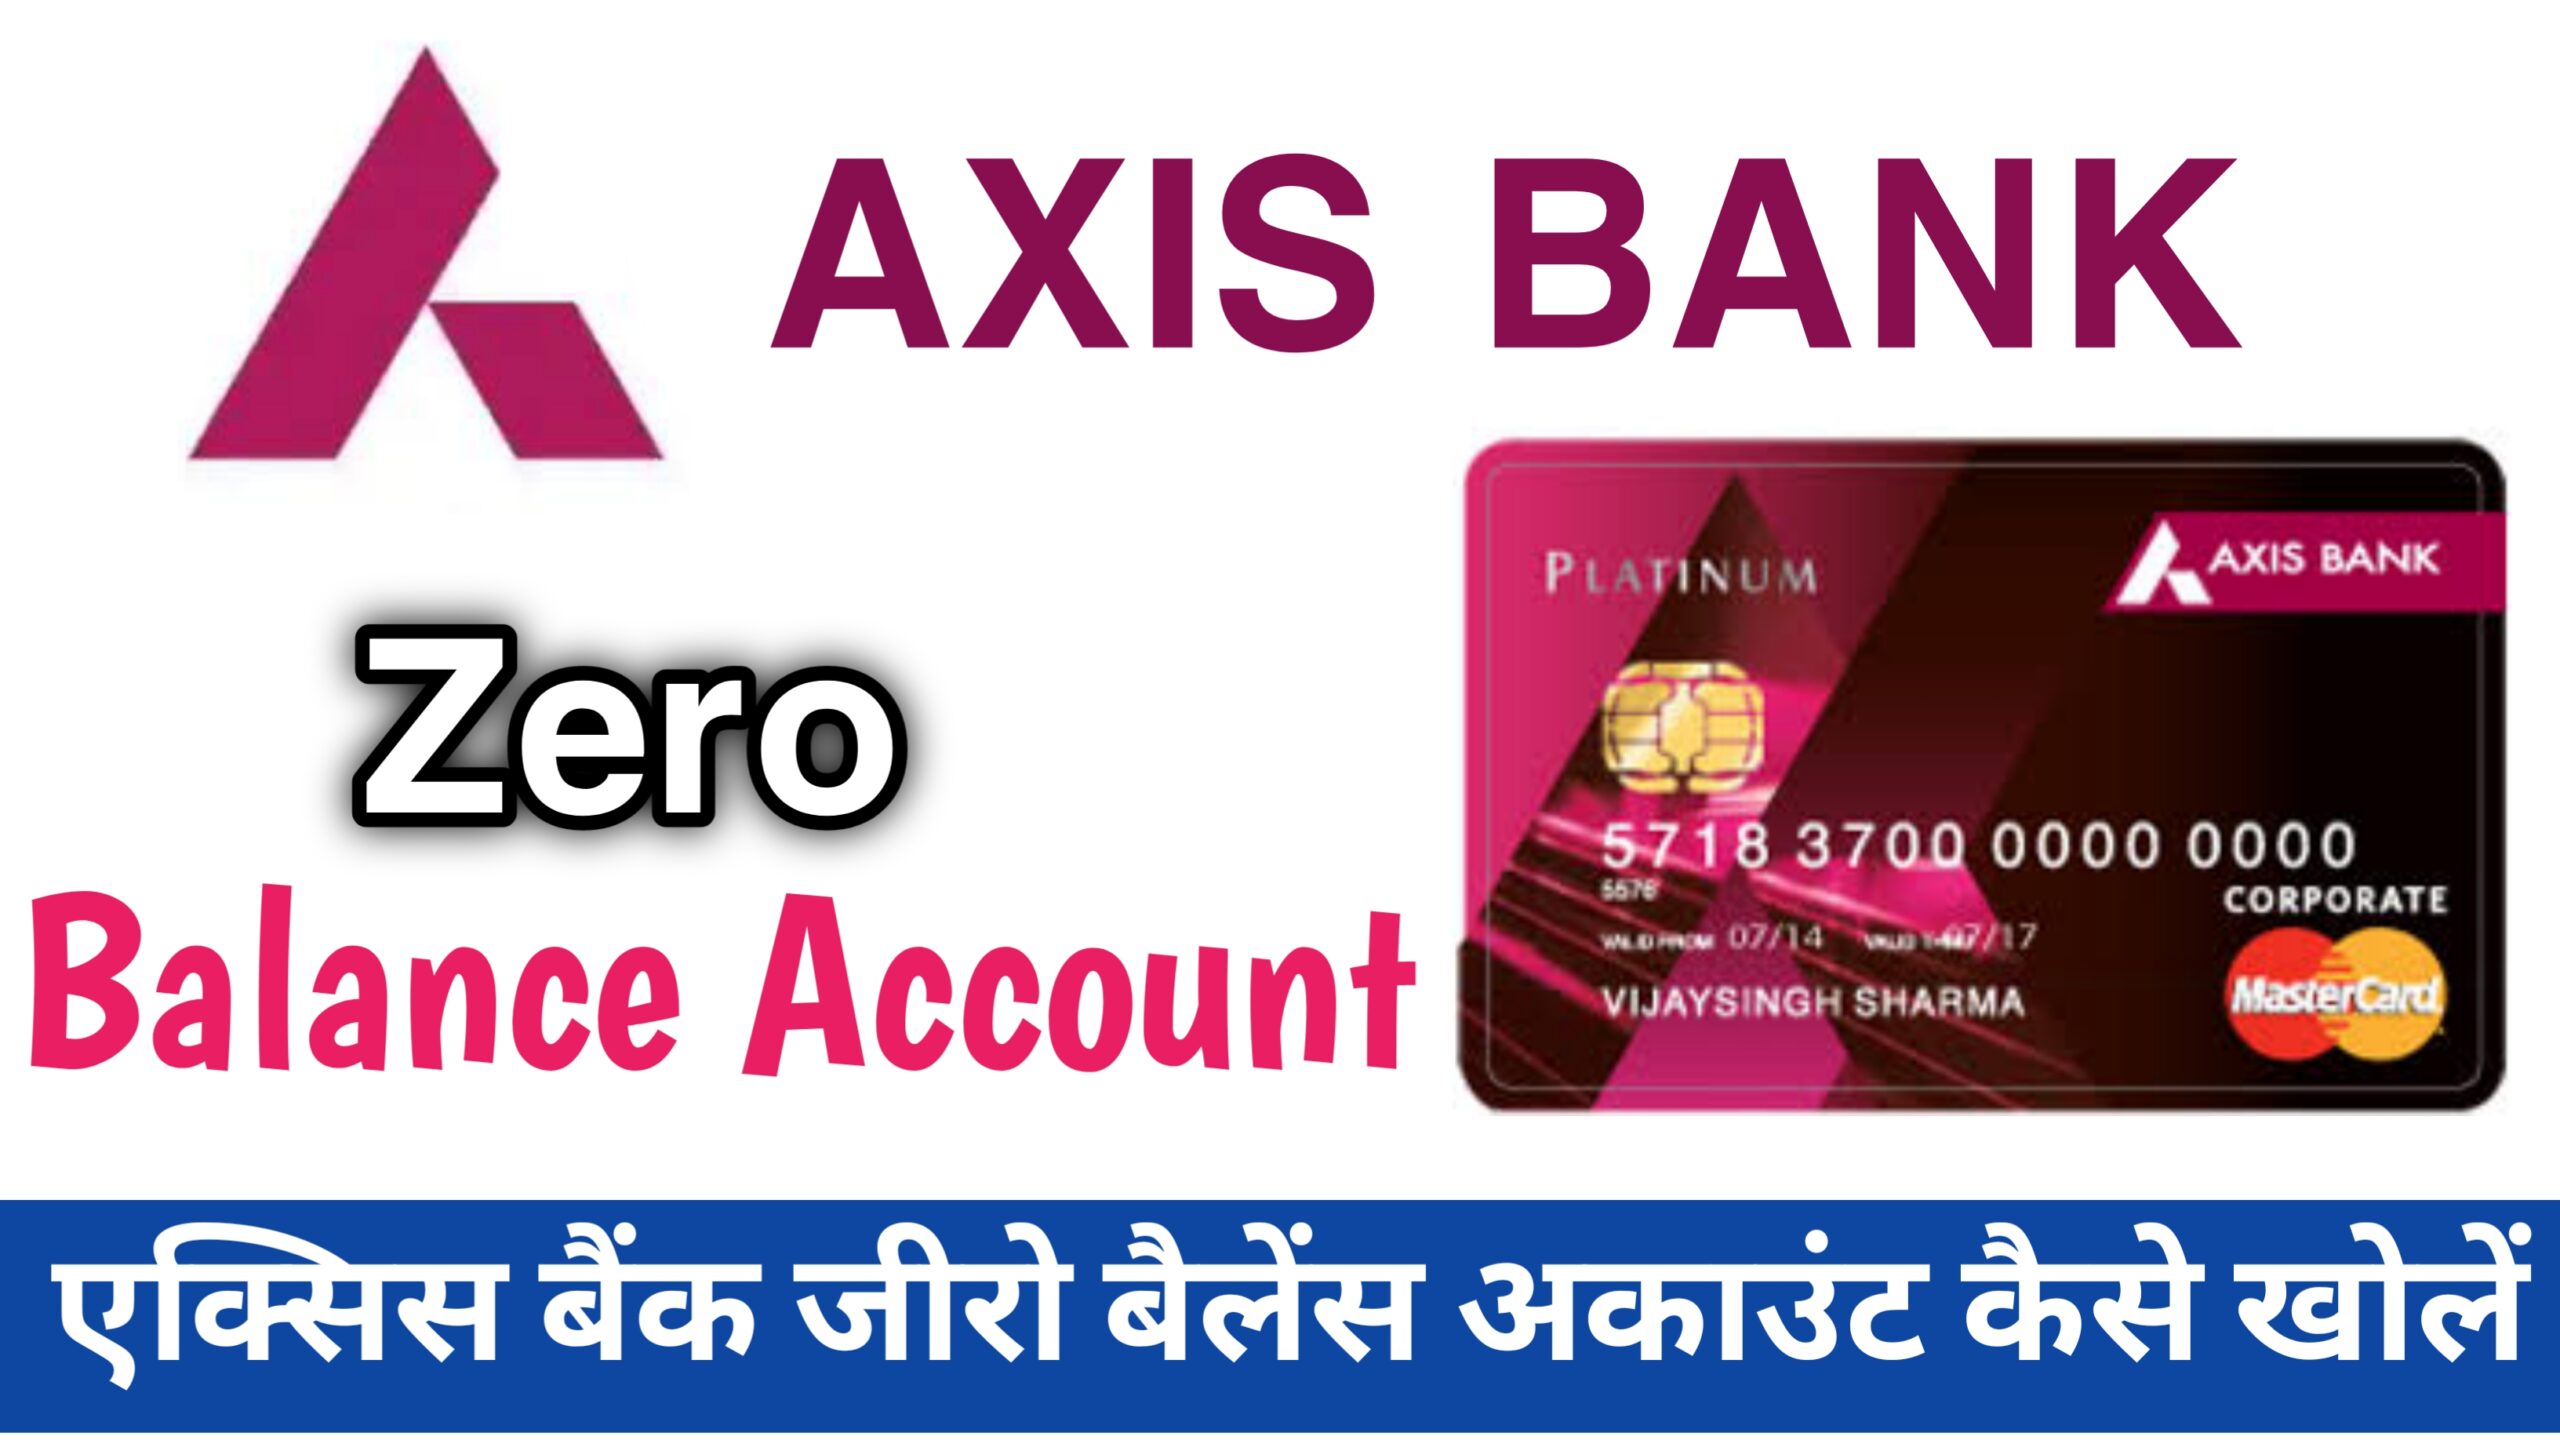 Axis bank zero balance account open